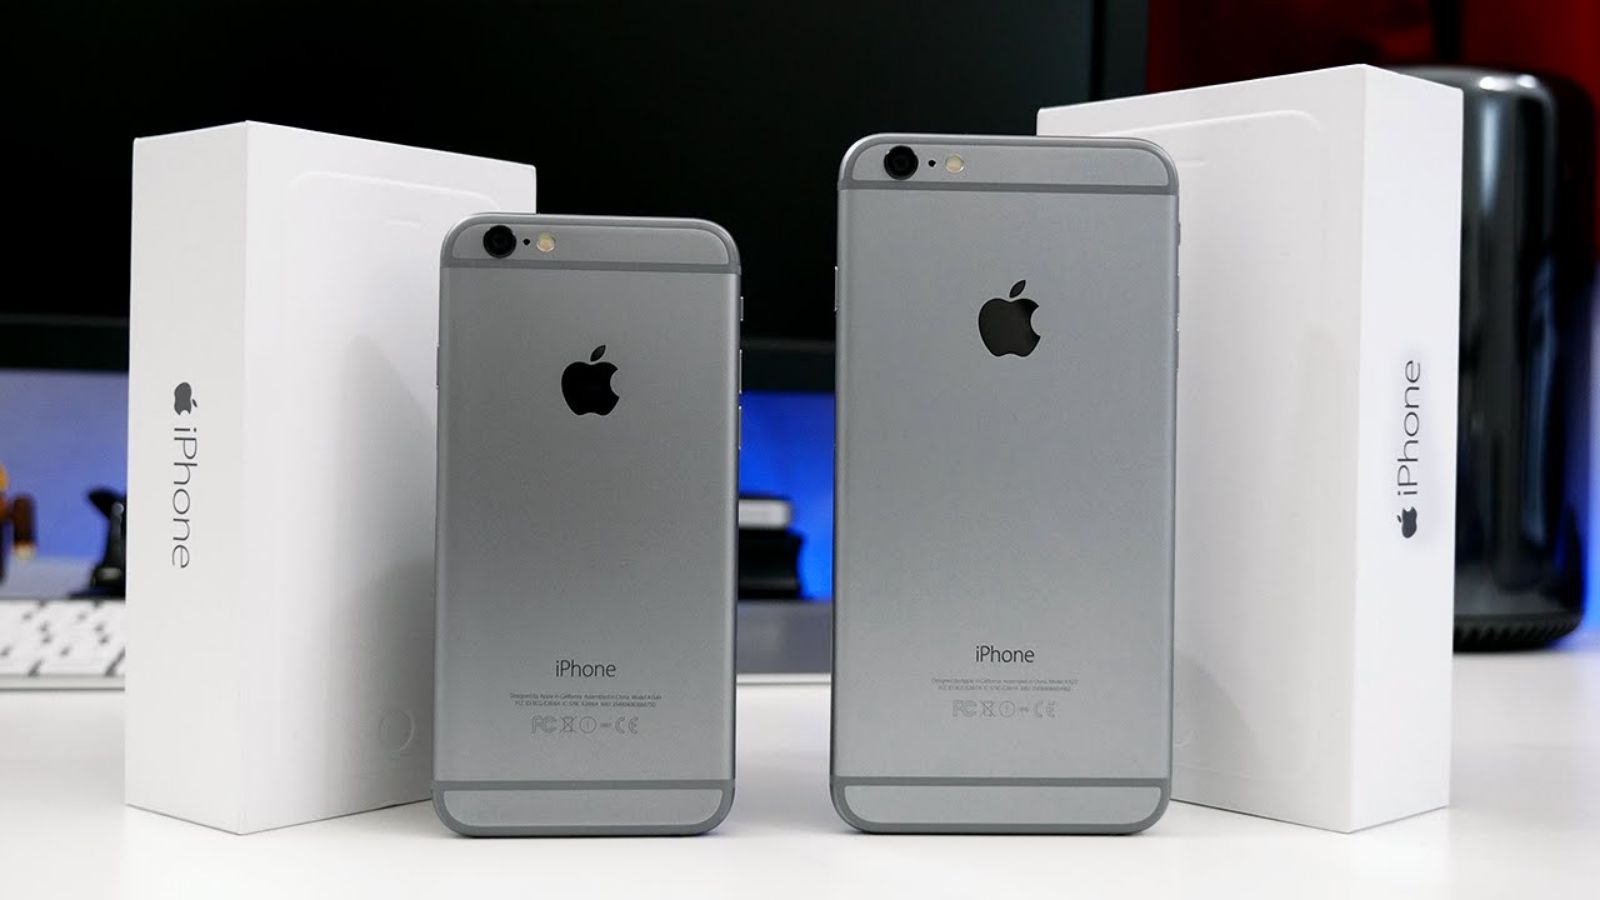 Màn hình iPhone 6 Plus Zin - Chất lượng cao - Giá rẻ